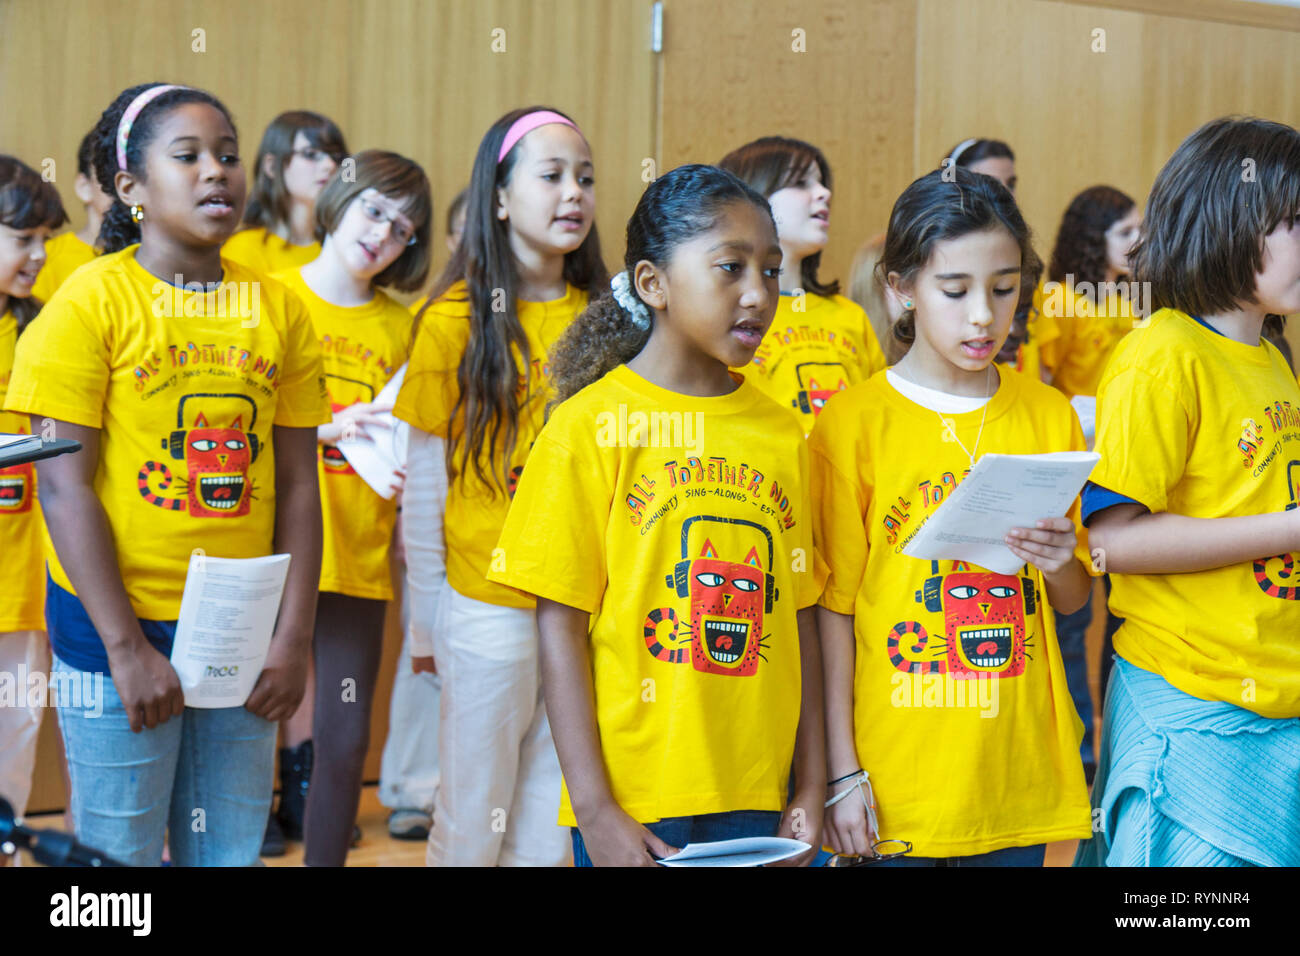 Miami Beach Florida, Öffentliche Bibliothek, Miami Kinderchor, Gemeinschaft singen mit, singen mit, Chor, Studenten Schwarzafrikaner, hispanische Mädchen Stockfoto